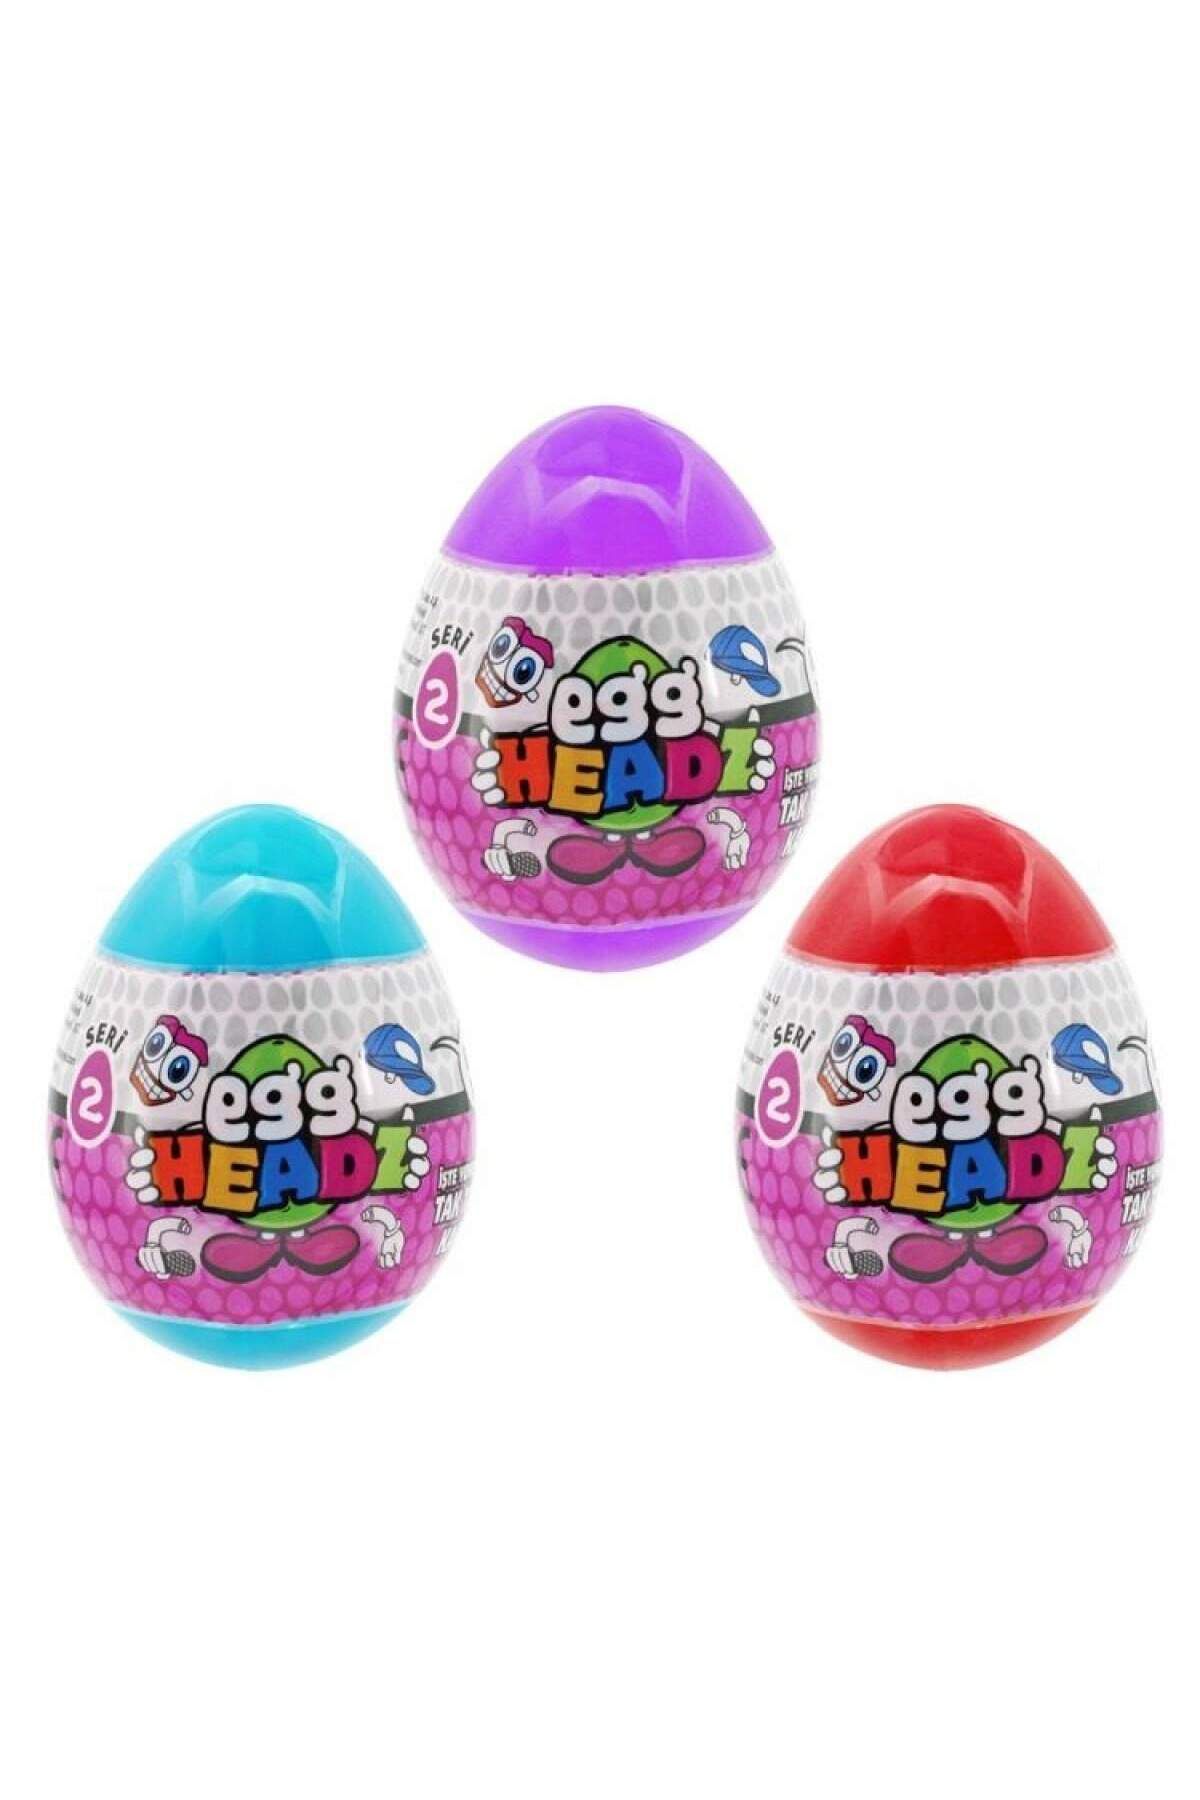 NECO TOYS Egg/0002 Yumurta Kafalar Sürpriz Yumurta Seri 2